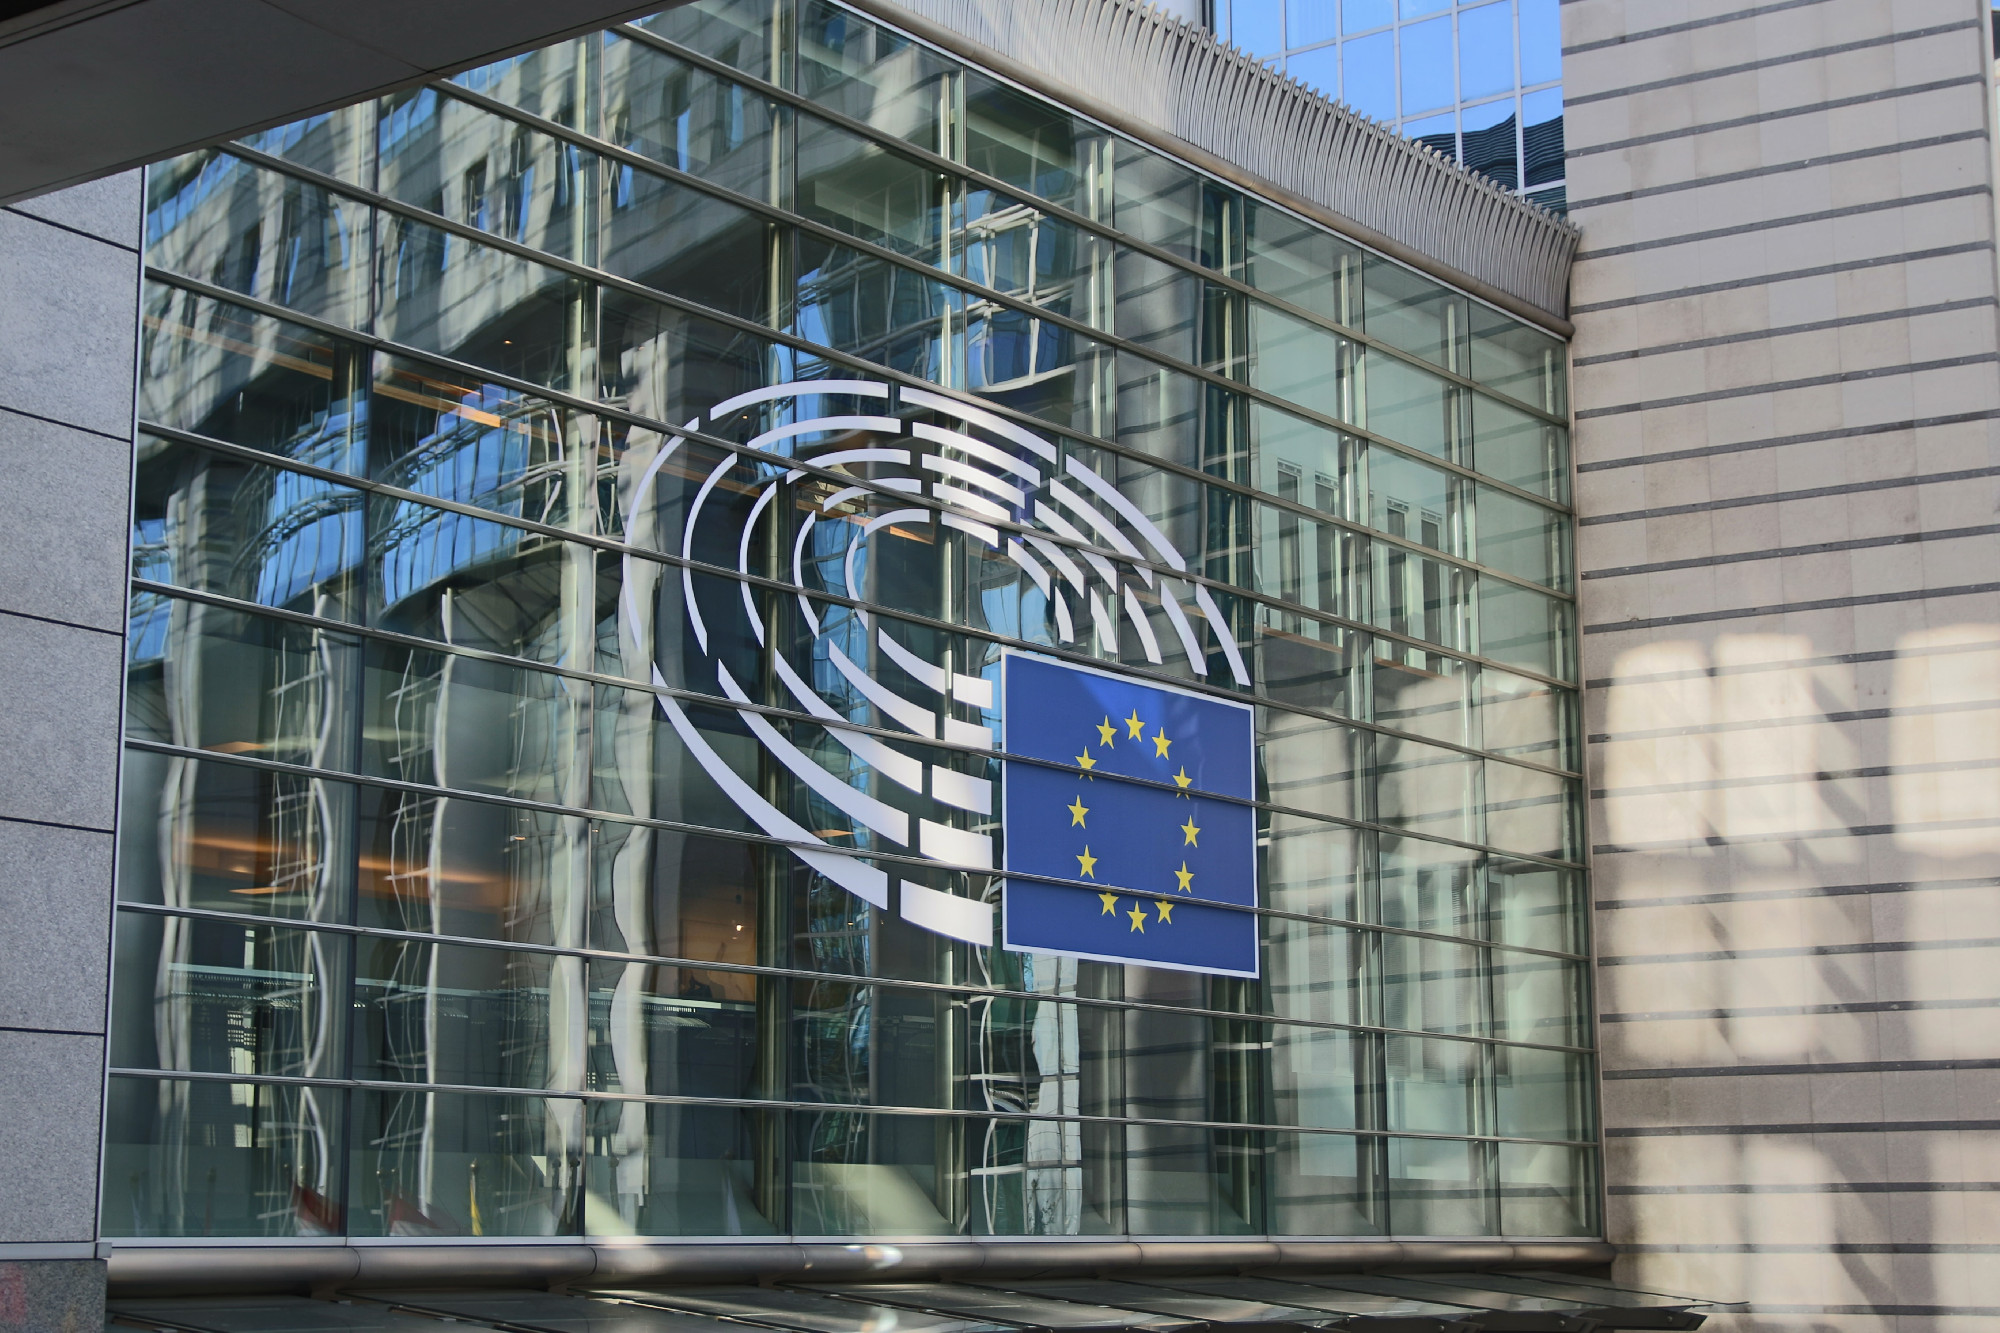 10 milliárd eurót felszabadított az Európai Bizottság, 21 milliárd marad zárolva